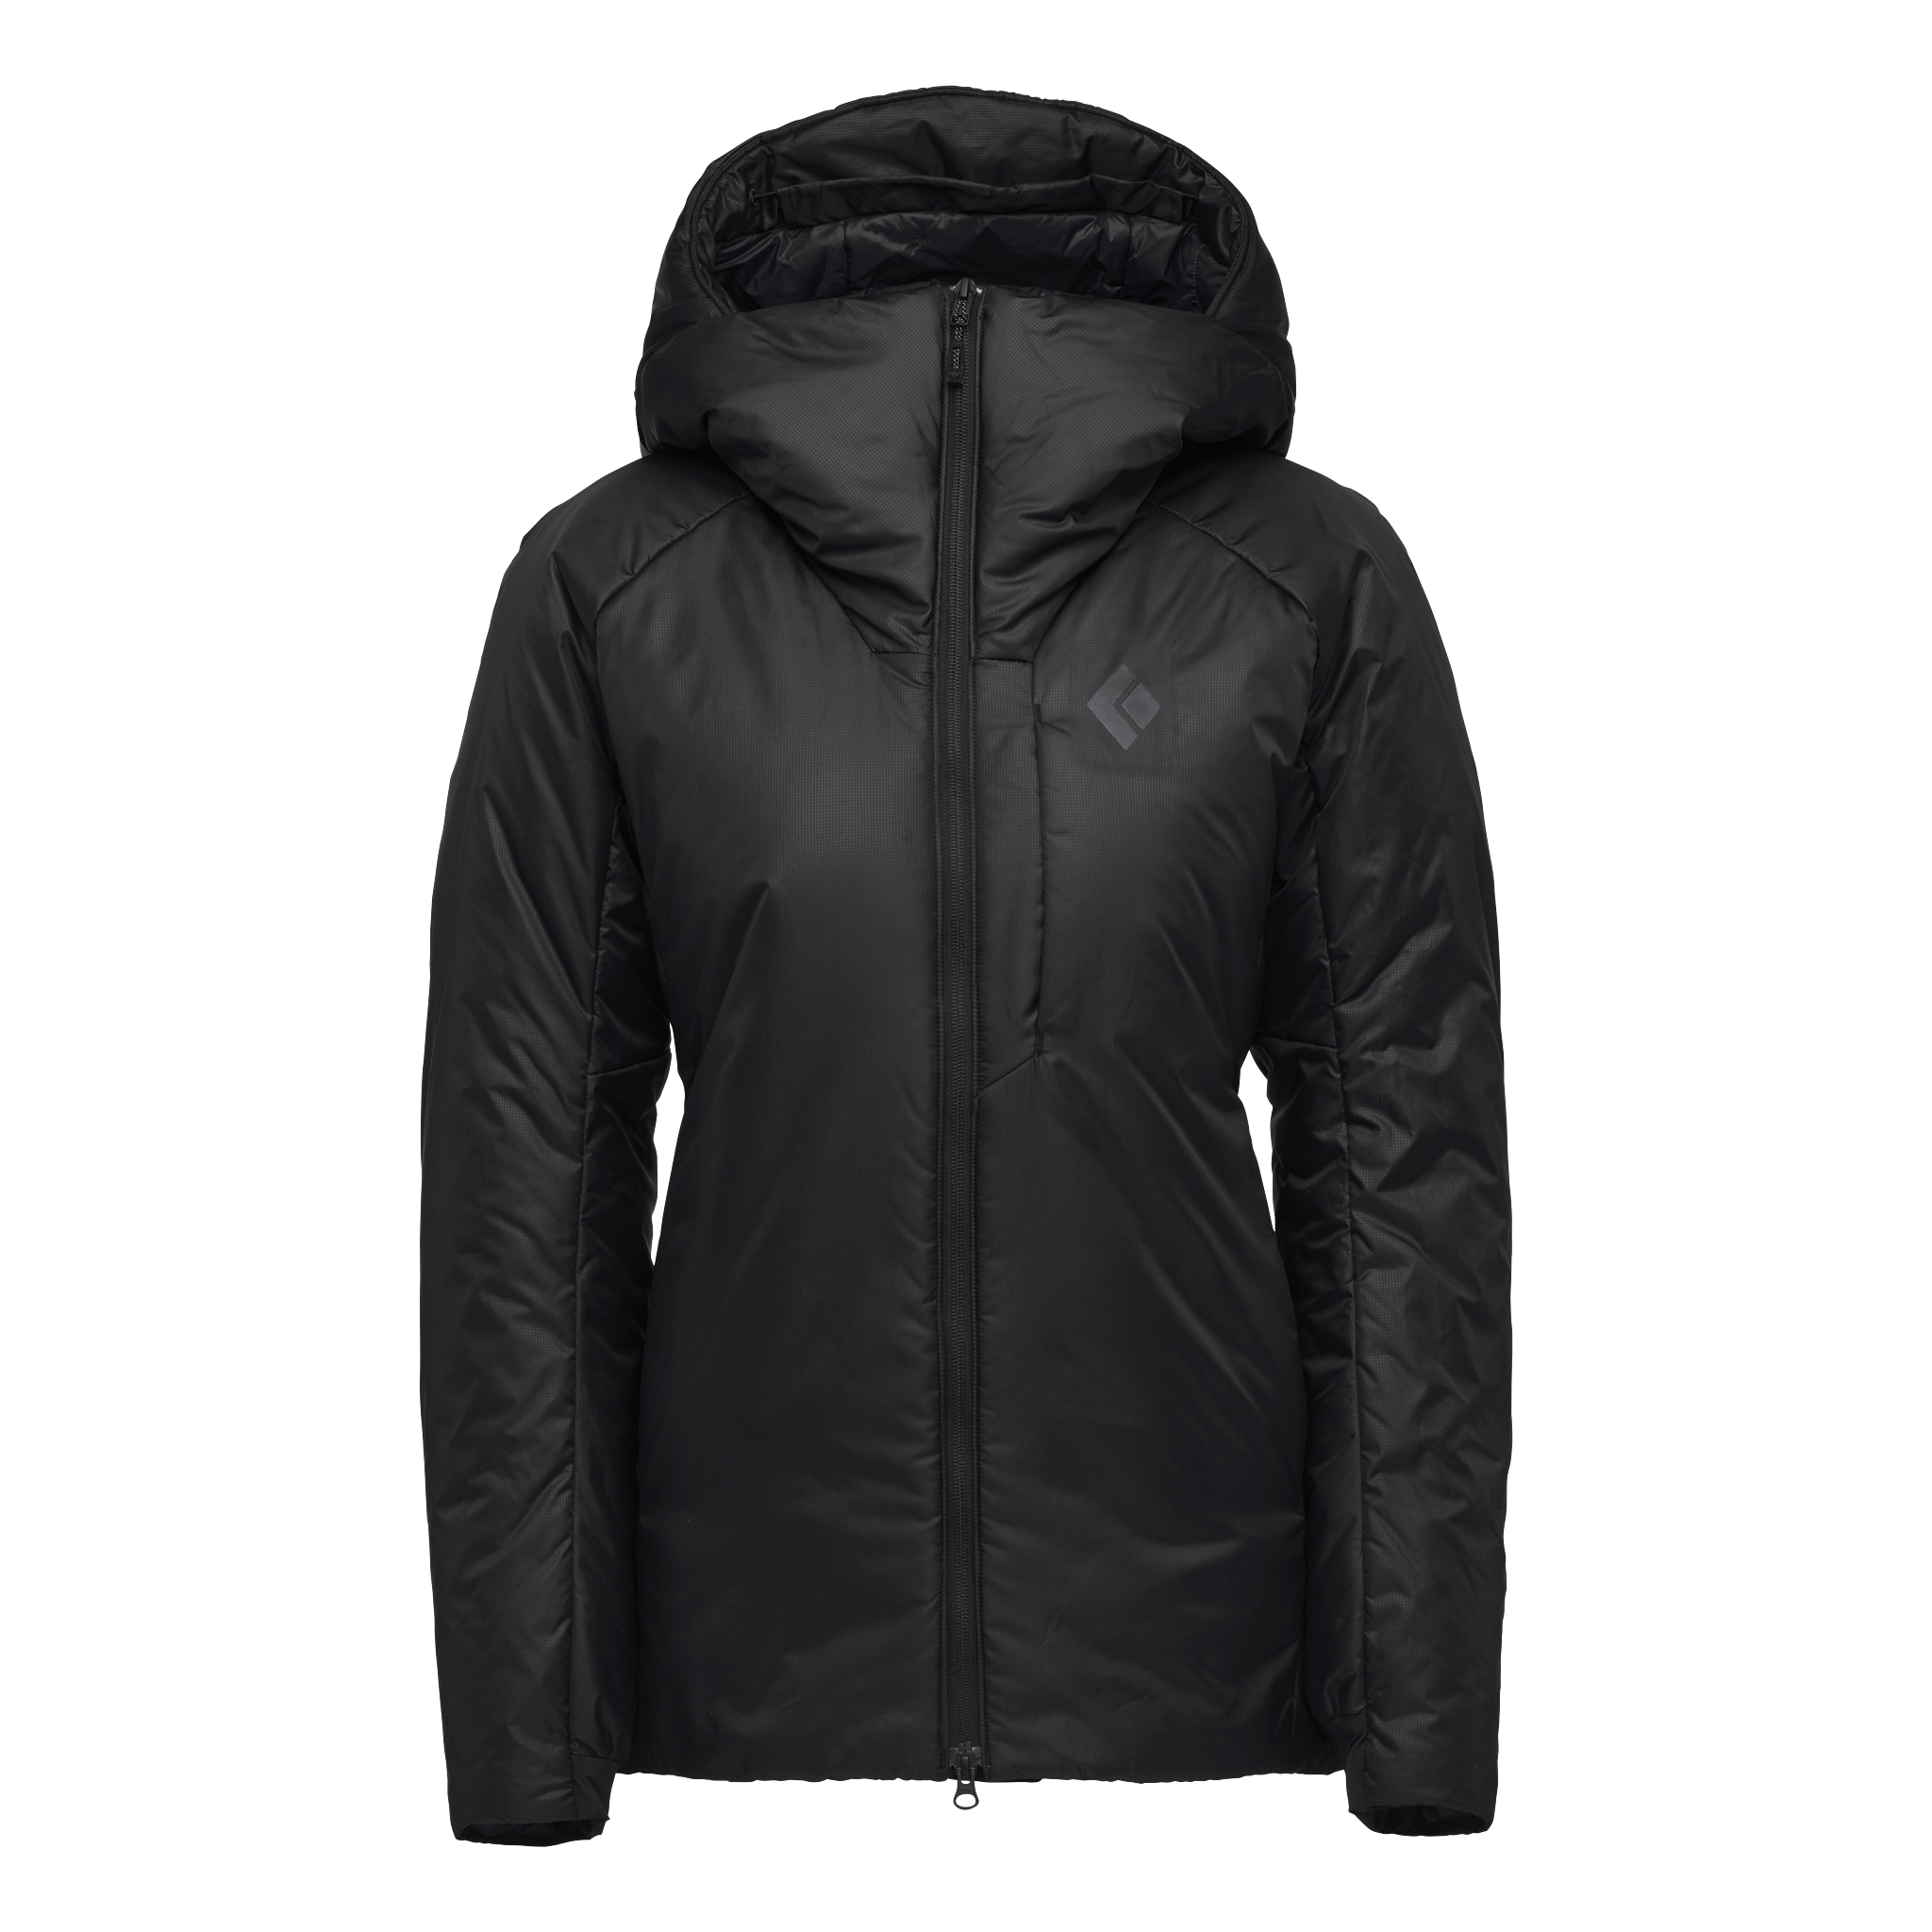 Black Diamond Equipment Women's Belay Parka Jacket Size XL Black